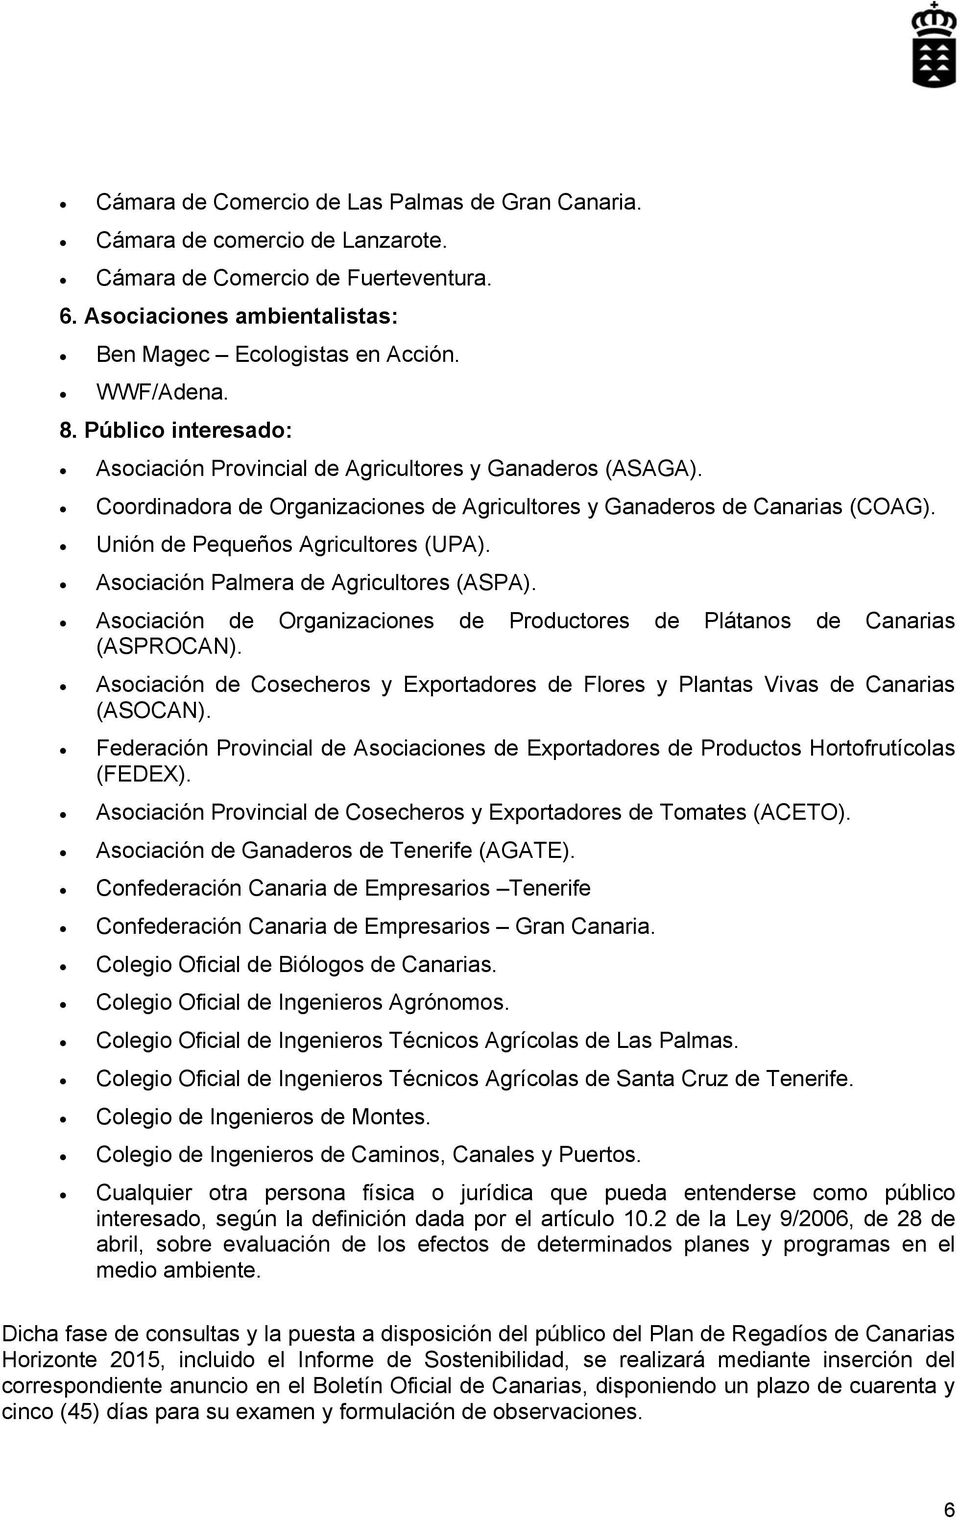 Asociación Palmera de Agricultores (ASPA). Asociación de Organizaciones de Productores de Plátanos de Canarias (ASPROCAN).